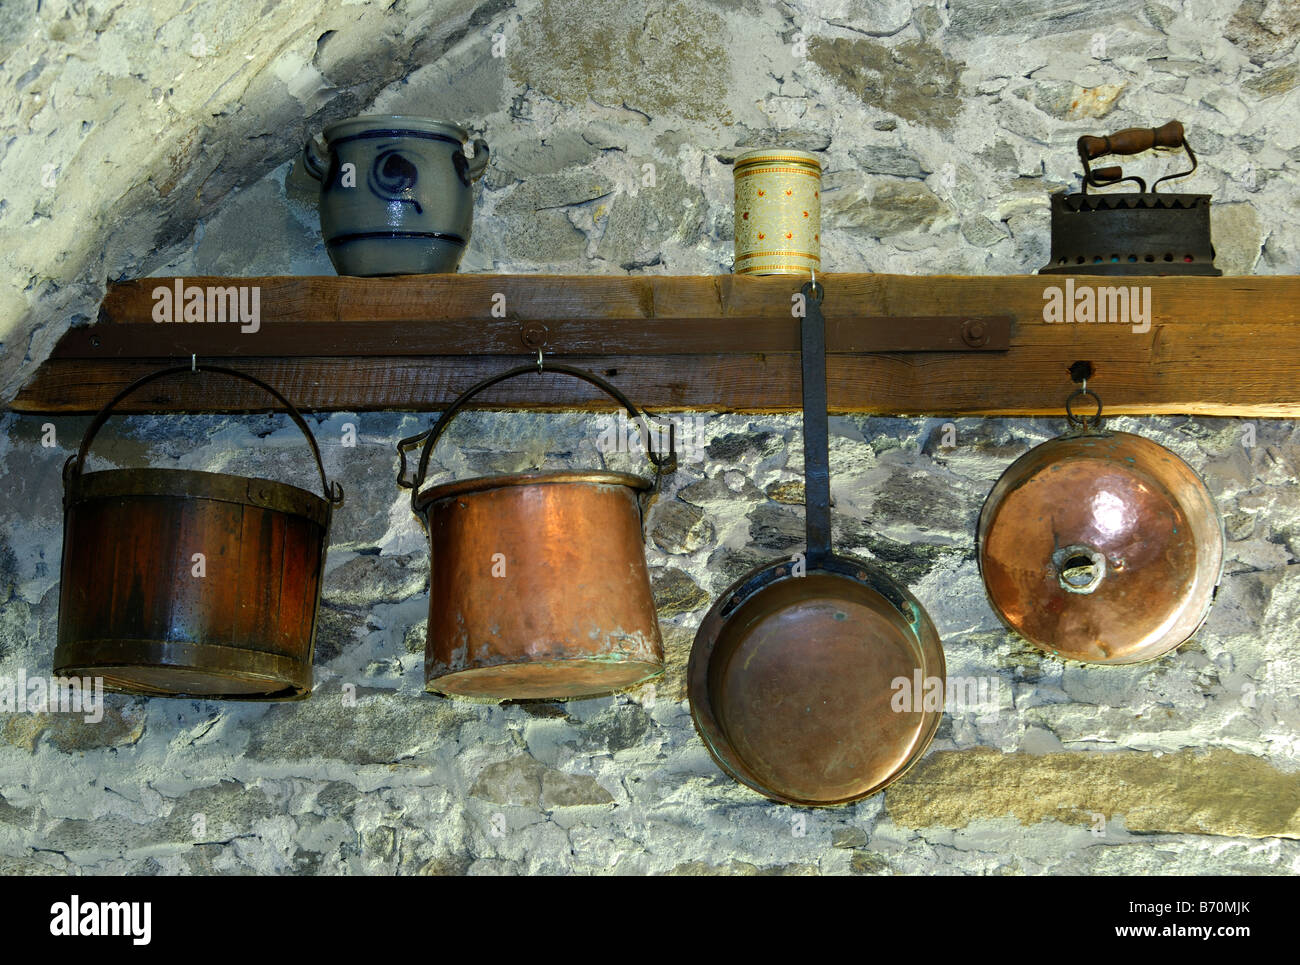 Kupferkessel, Kupfer Pfannen und andere Geschirr in einem Bauernhaus in  Tessin, Schweiz Stockfotografie - Alamy